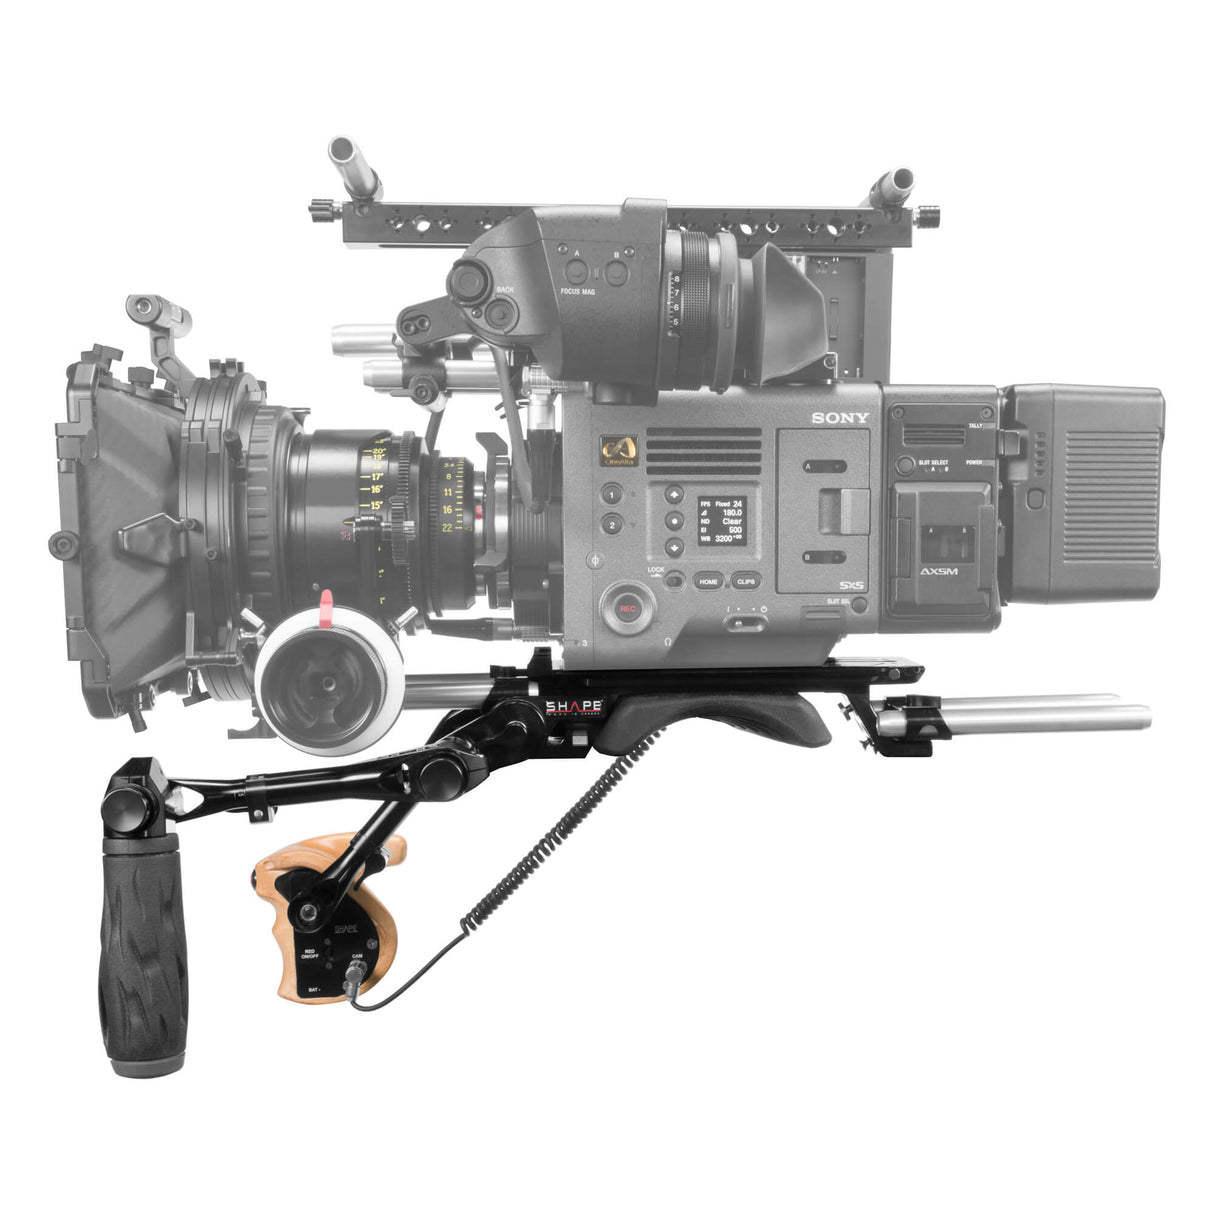 Épaulière, baseplate 15 mm LW avec poignée téléscopique et poignée stop & start pour Sony Venice